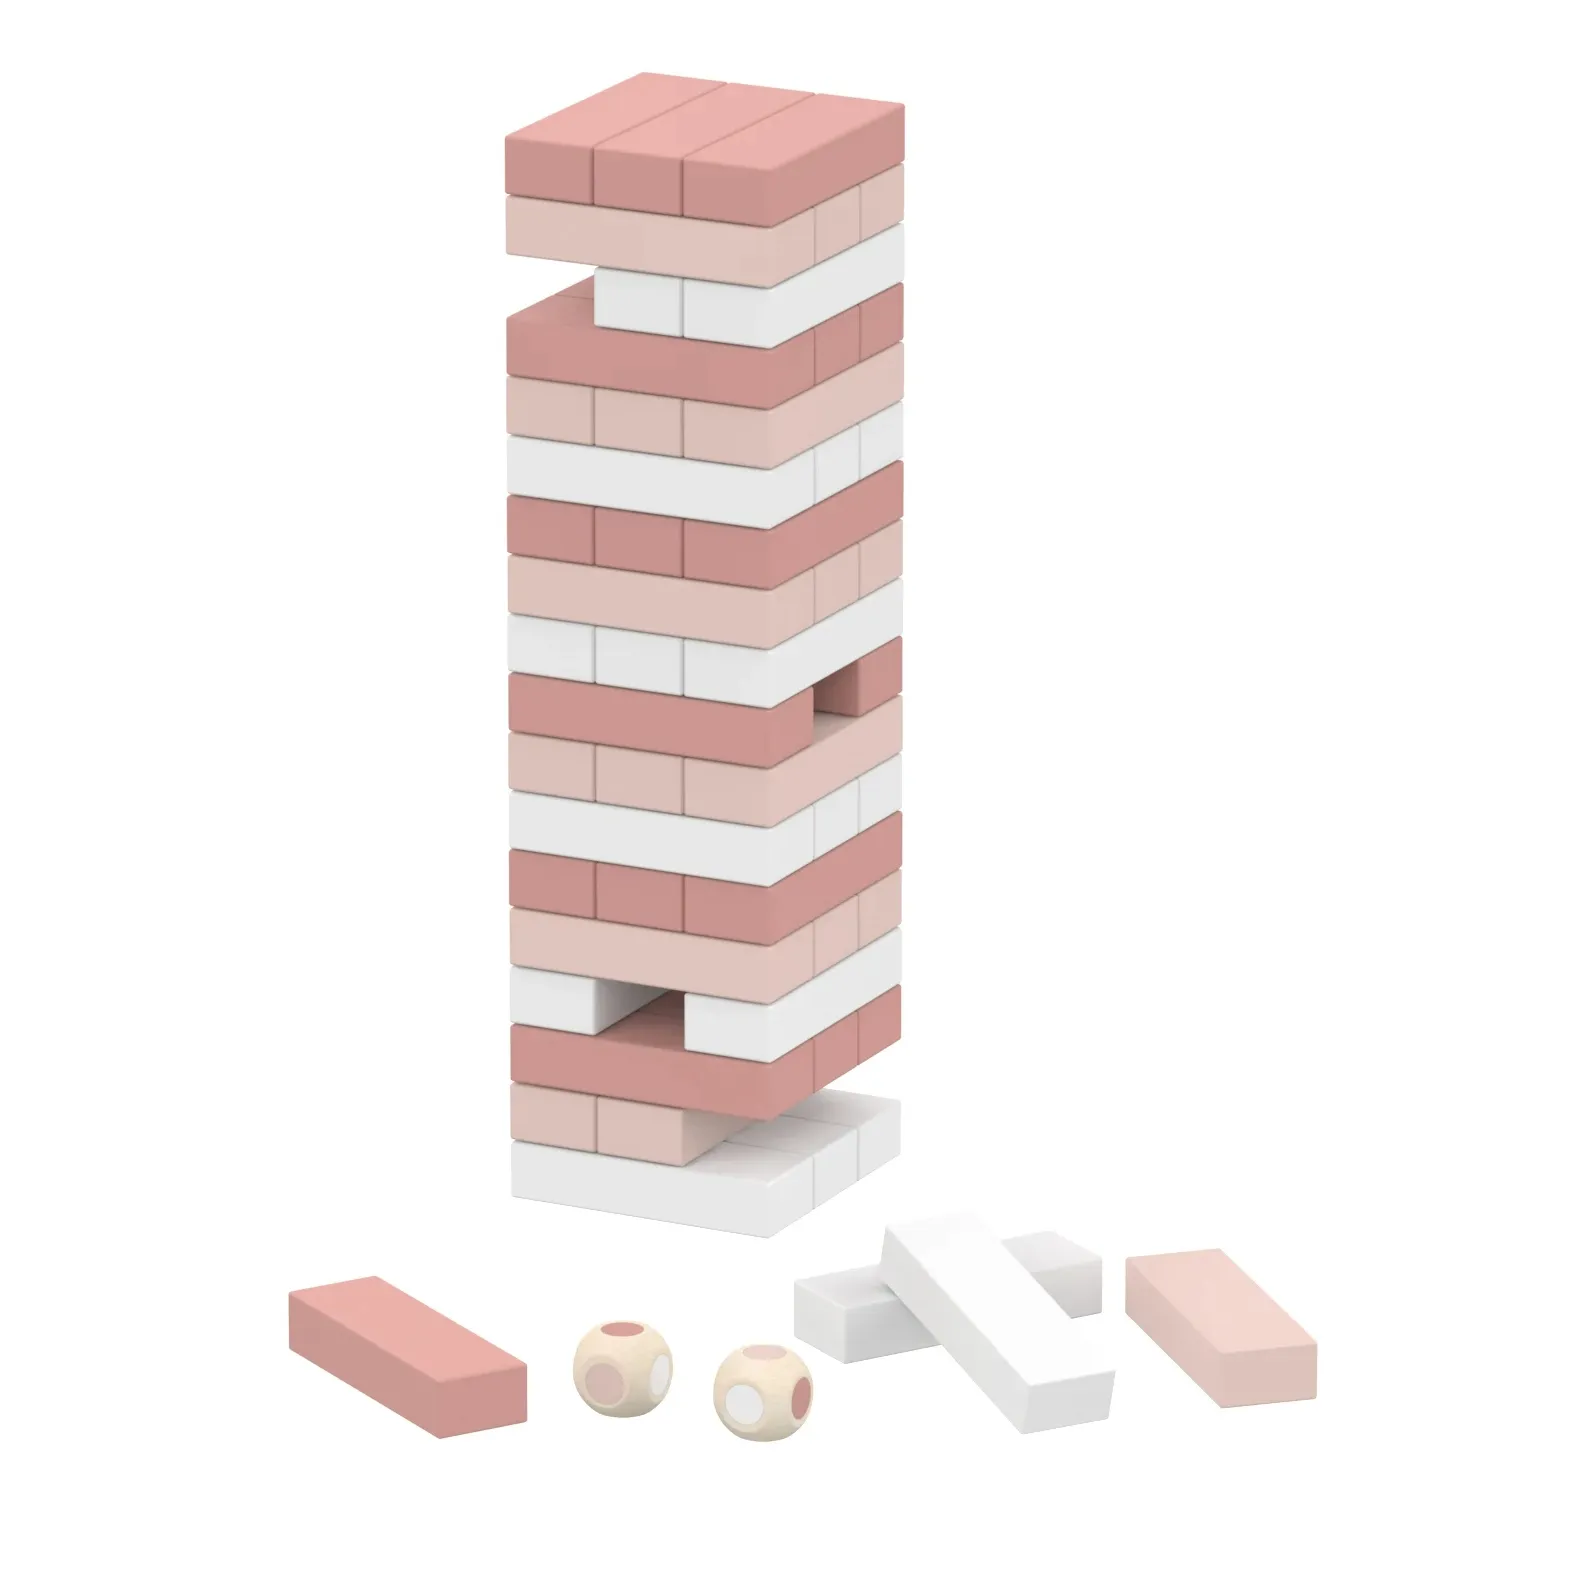 لعبة برج مخصصة عالية الجودة من Doral ، لعبة كتل خشبية داخلية ، لعبة كتل البناء الكلاسيكية